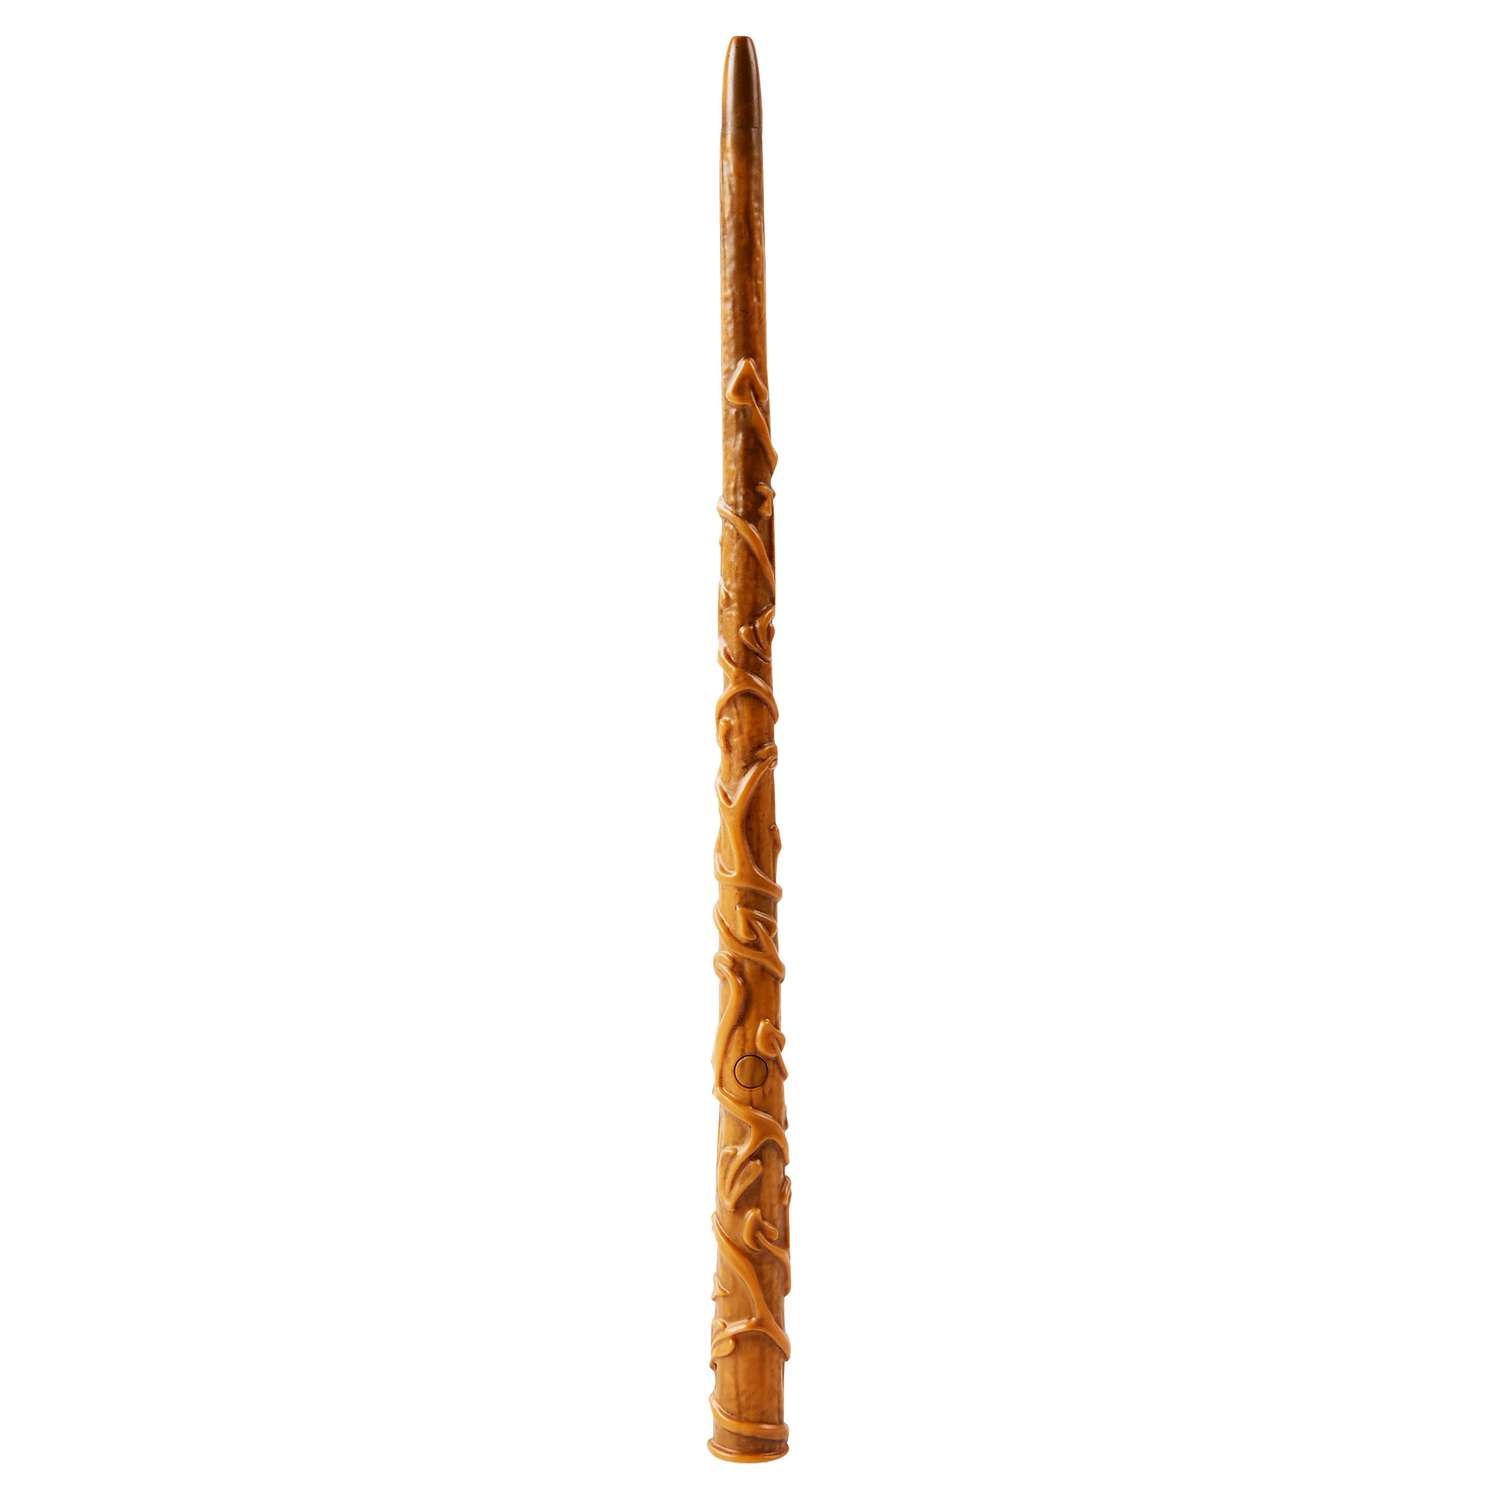 Игрушка WWO Harry Potter Волшебная палочка Гермионы Экспекто патронум 6064165 - фото 2